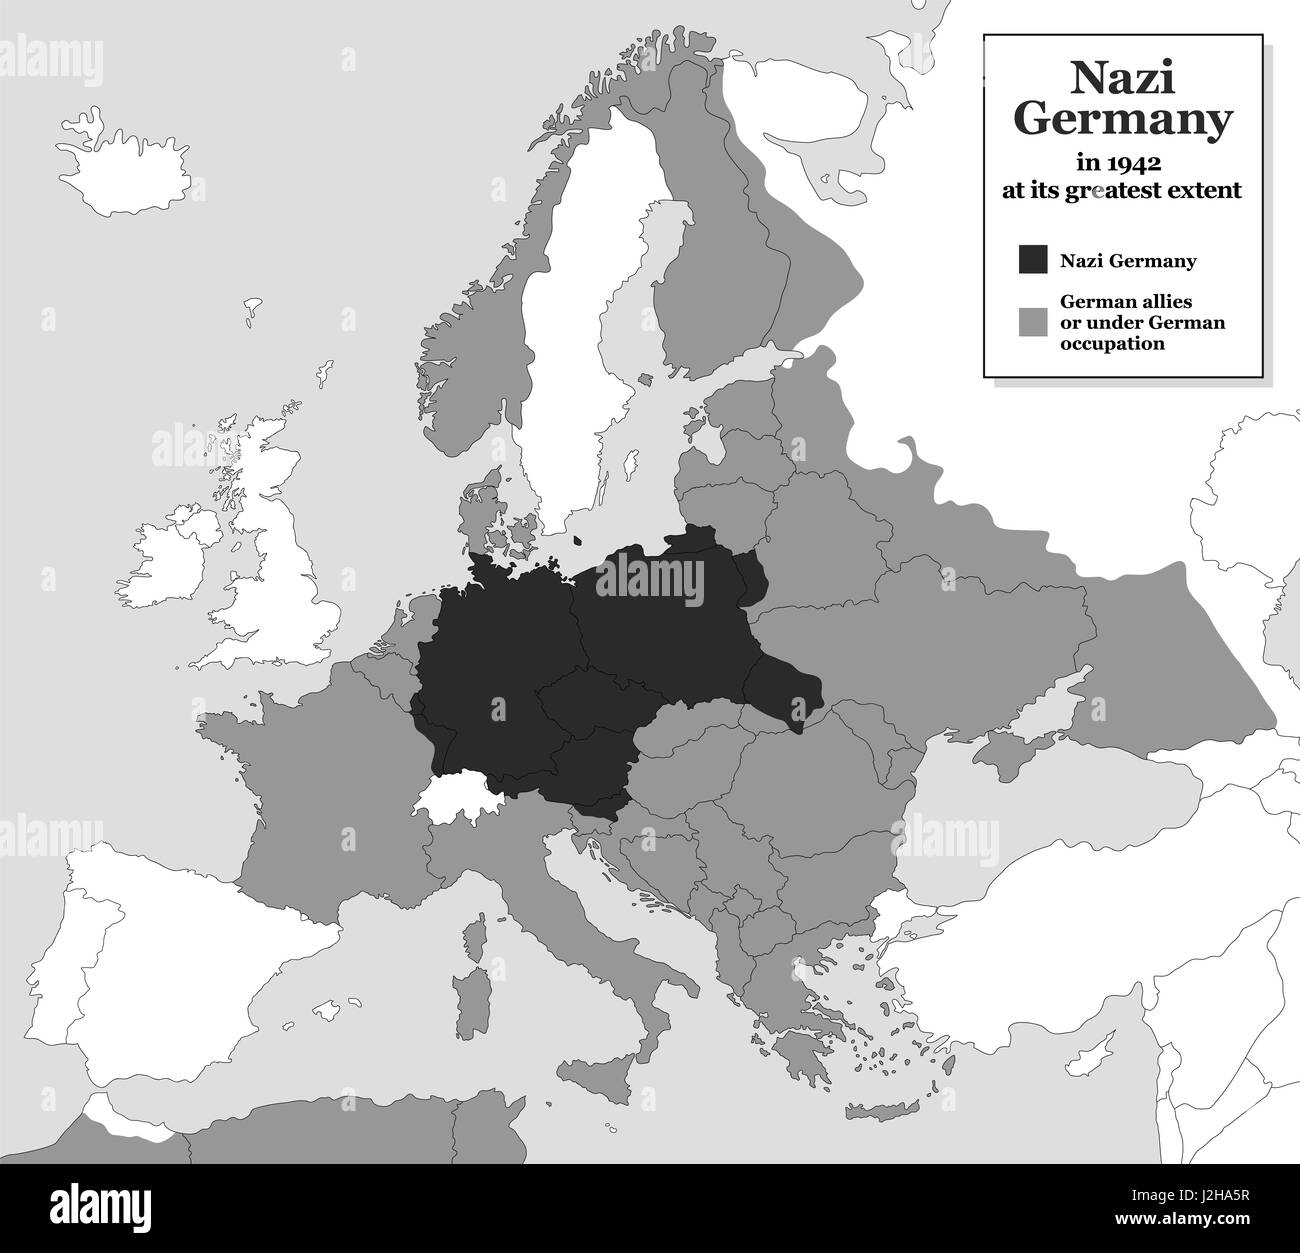 Nazi-Deutschland auf seine größte Ausdehnung während des zweiten Weltkriegs im Jahre 1942 - mit deutschen Verbündeten und Staaten unter deutscher Besatzung. Historische Karte schwarz und weiß. Stockfoto